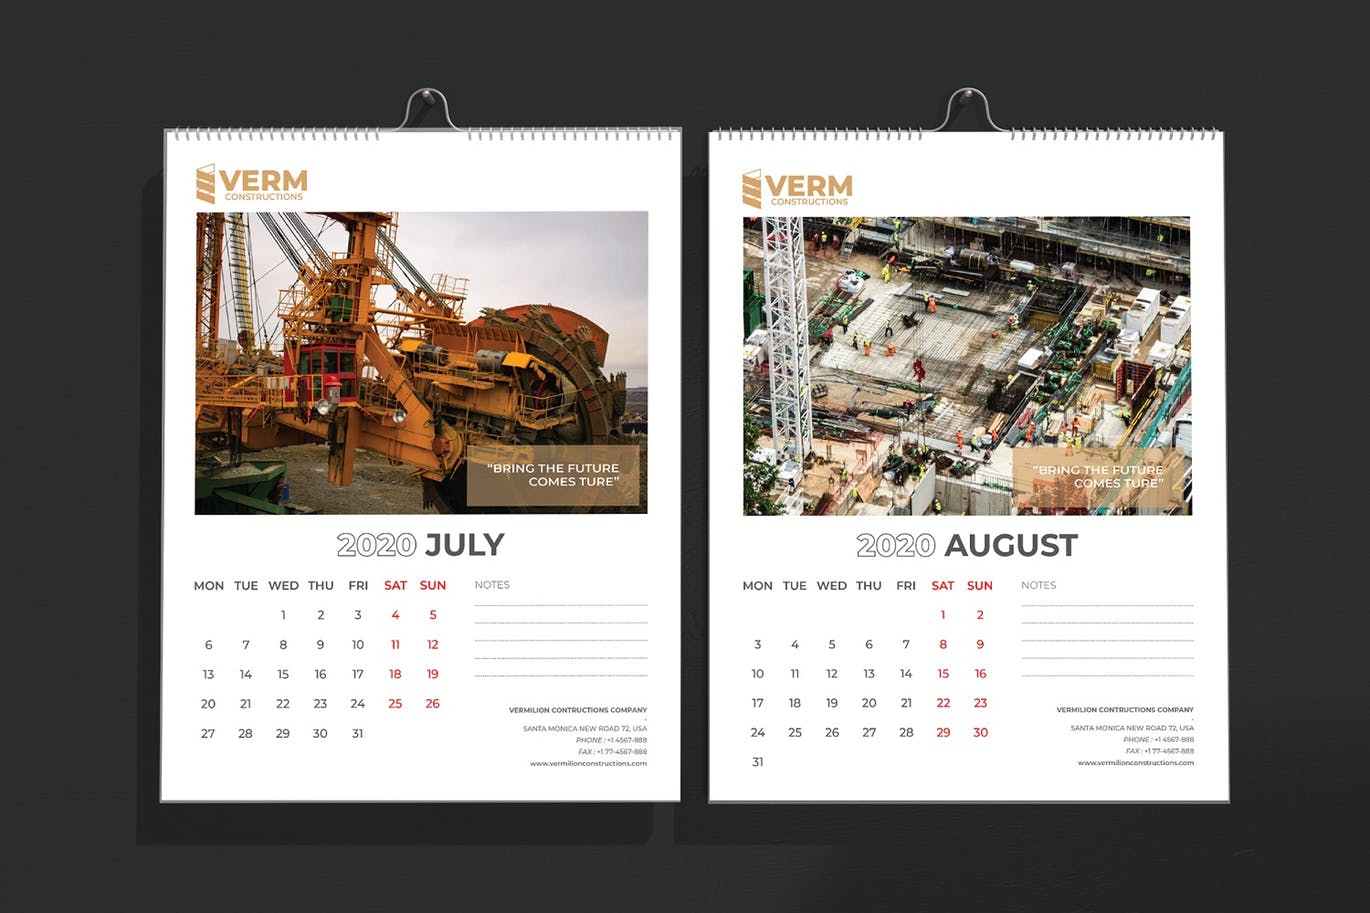 2020年建筑主题台历&挂墙日历表设计模板 Construction Wall & Table Calendar 2020插图(6)